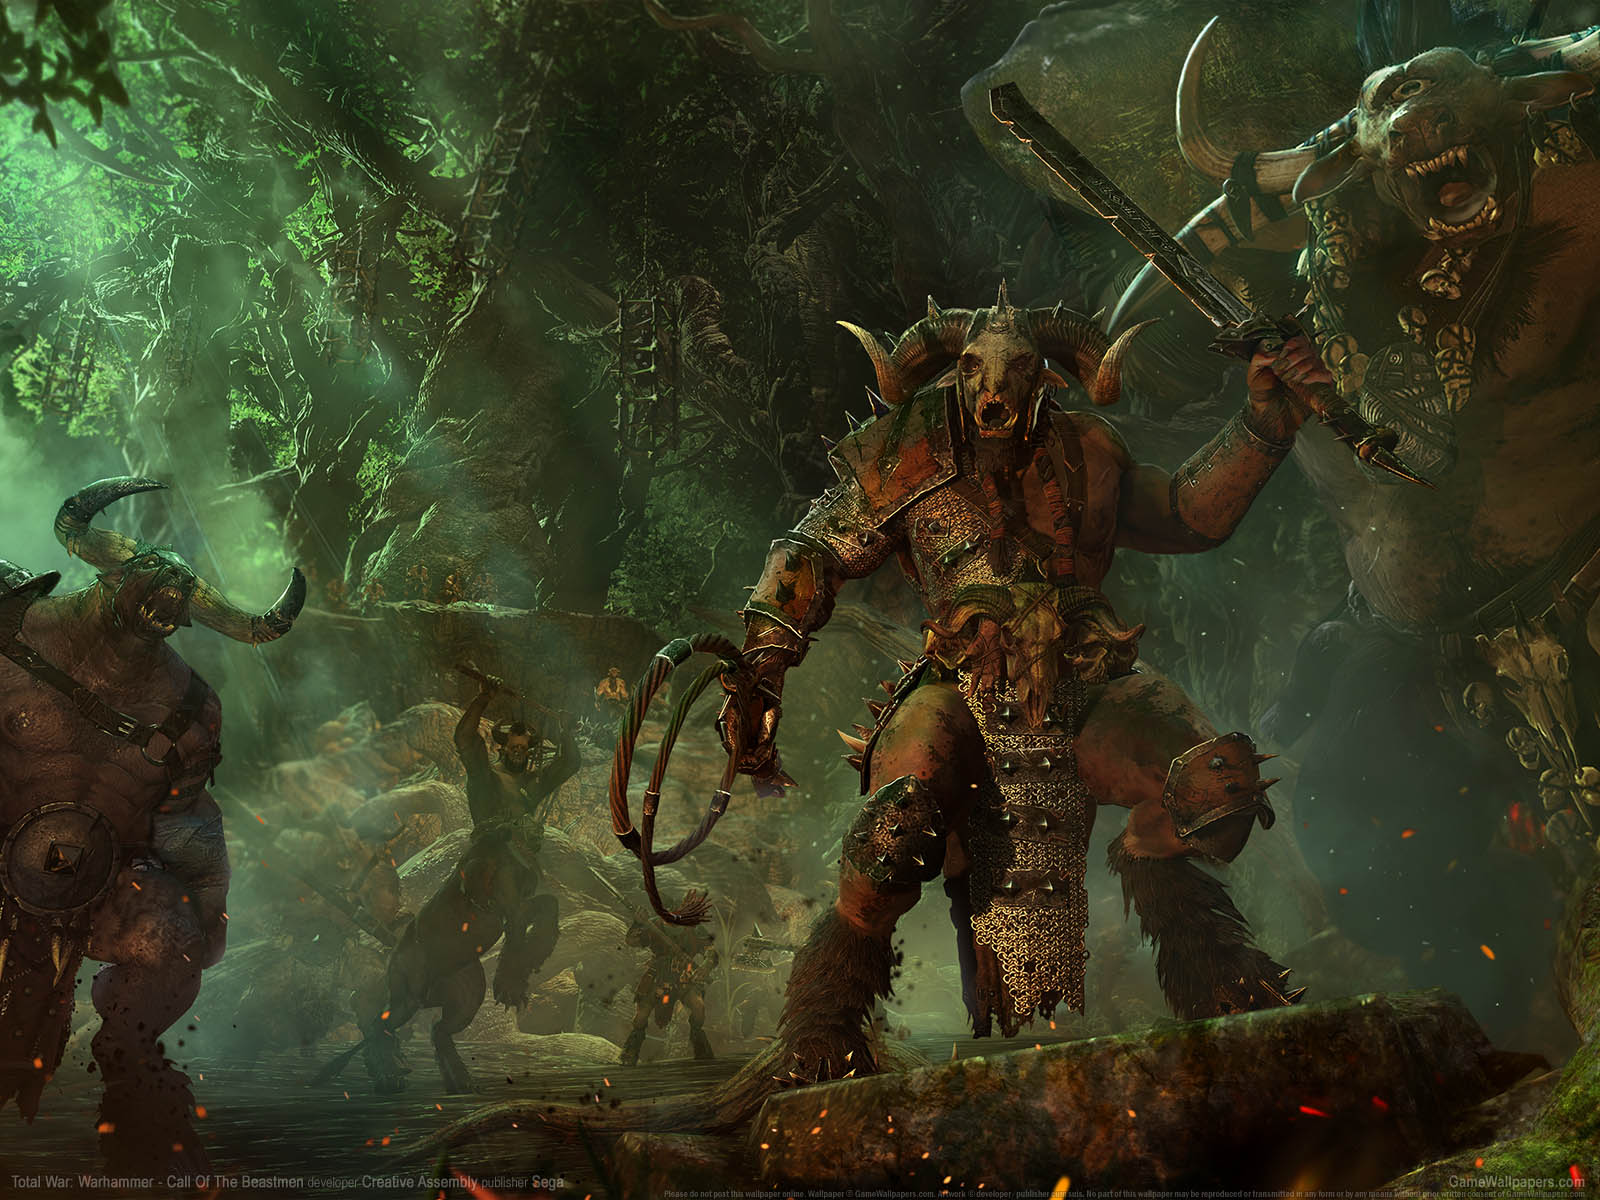 Total War: Warhammer - Call of the Beastmen fond d'cran 01 1600x1200